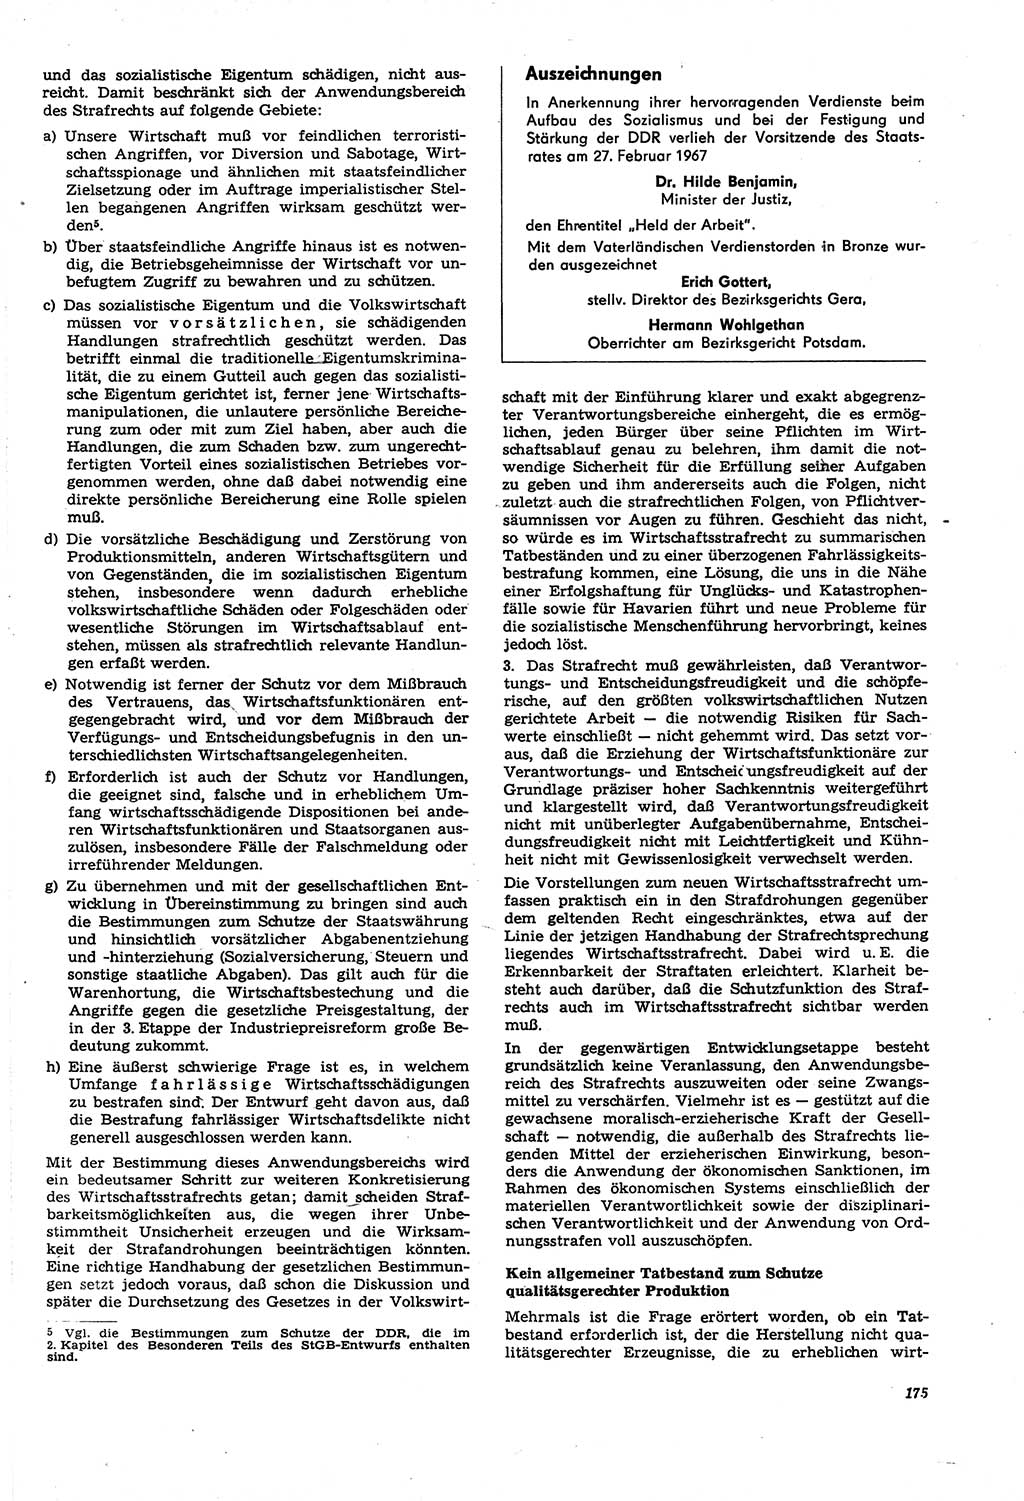 Neue Justiz (NJ), Zeitschrift für Recht und Rechtswissenschaft [Deutsche Demokratische Republik (DDR)], 21. Jahrgang 1967, Seite 175 (NJ DDR 1967, S. 175)